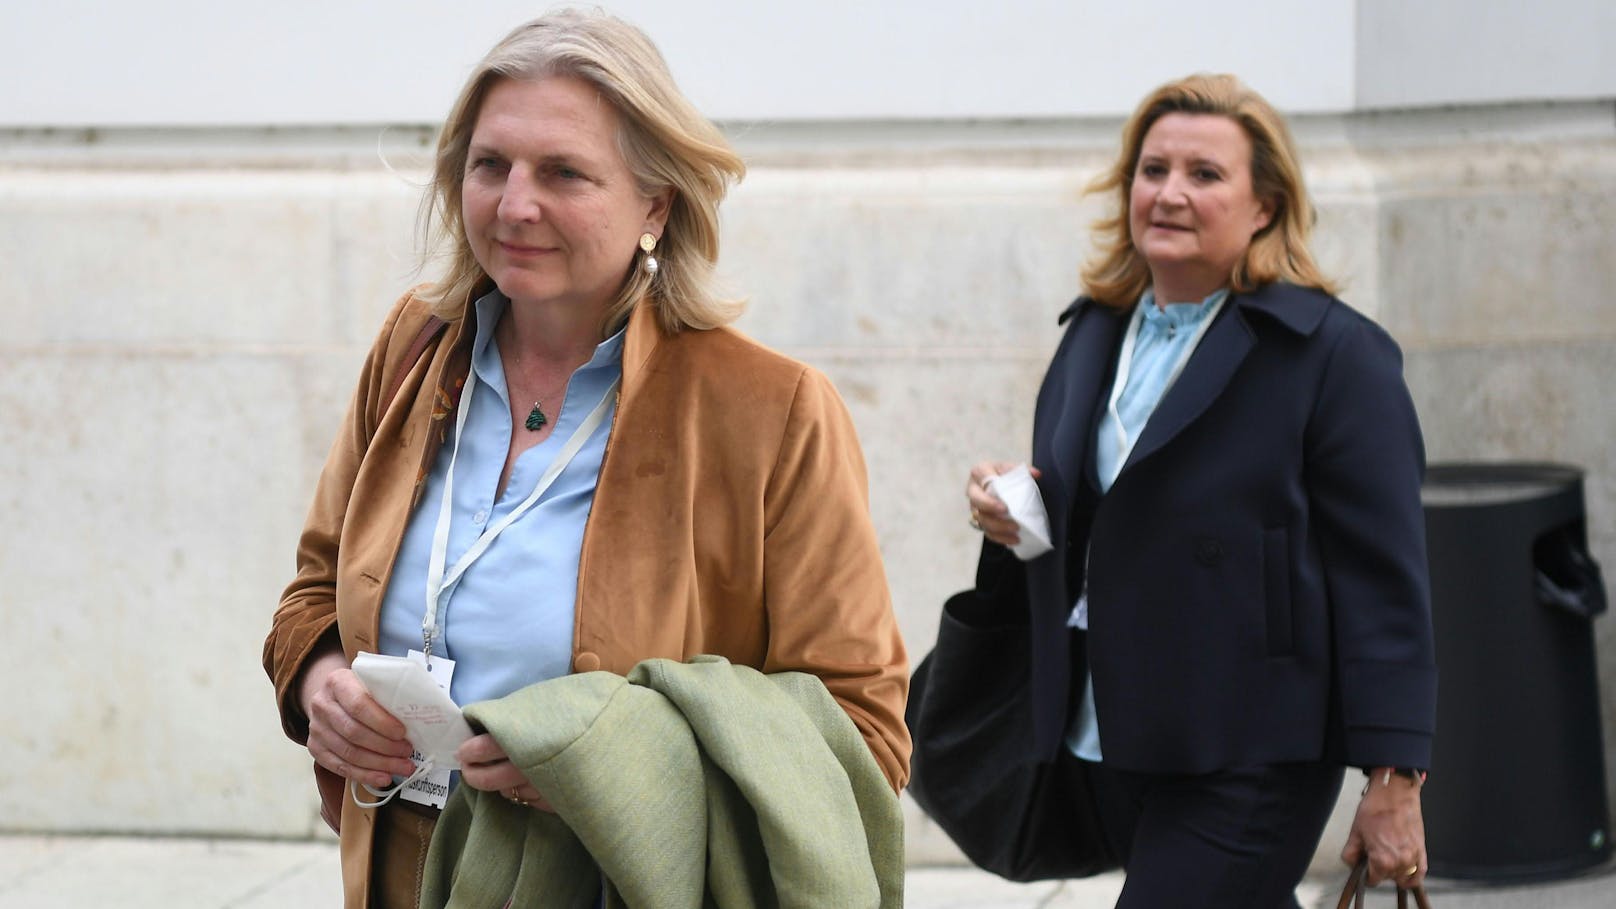 Im Bild links: Die ehemalige Außenministerin Karin Kneissl am 4. Mai 2021 im Rahmen des Ibiza-U-Ausschusses.